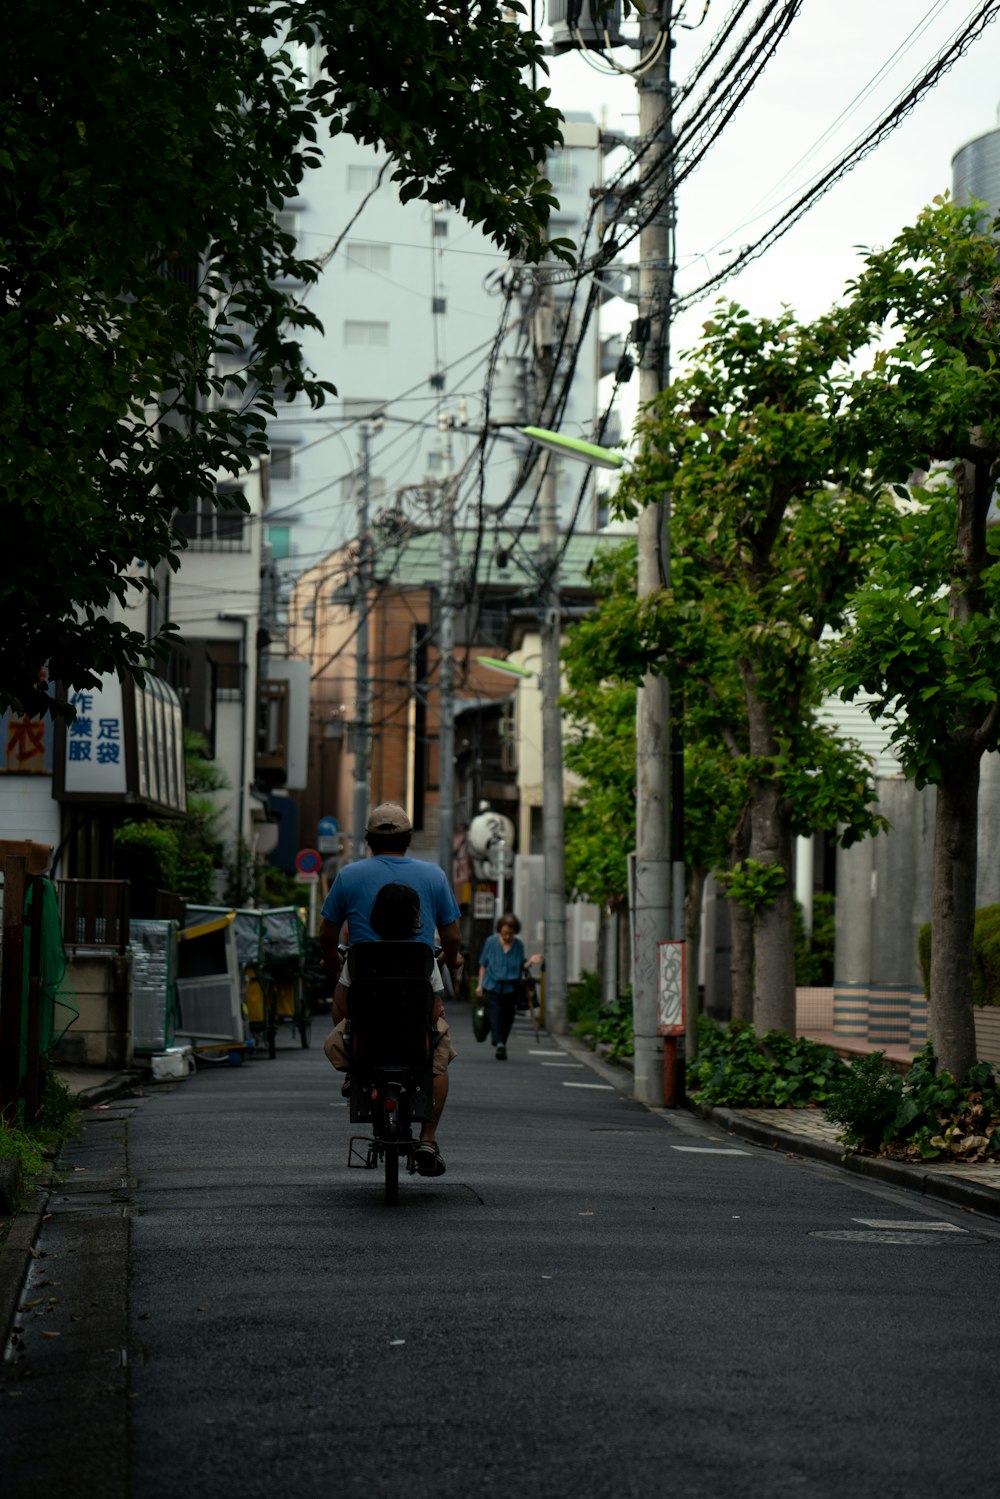 un uomo in sella a una bicicletta lungo una strada accanto a edifici alti